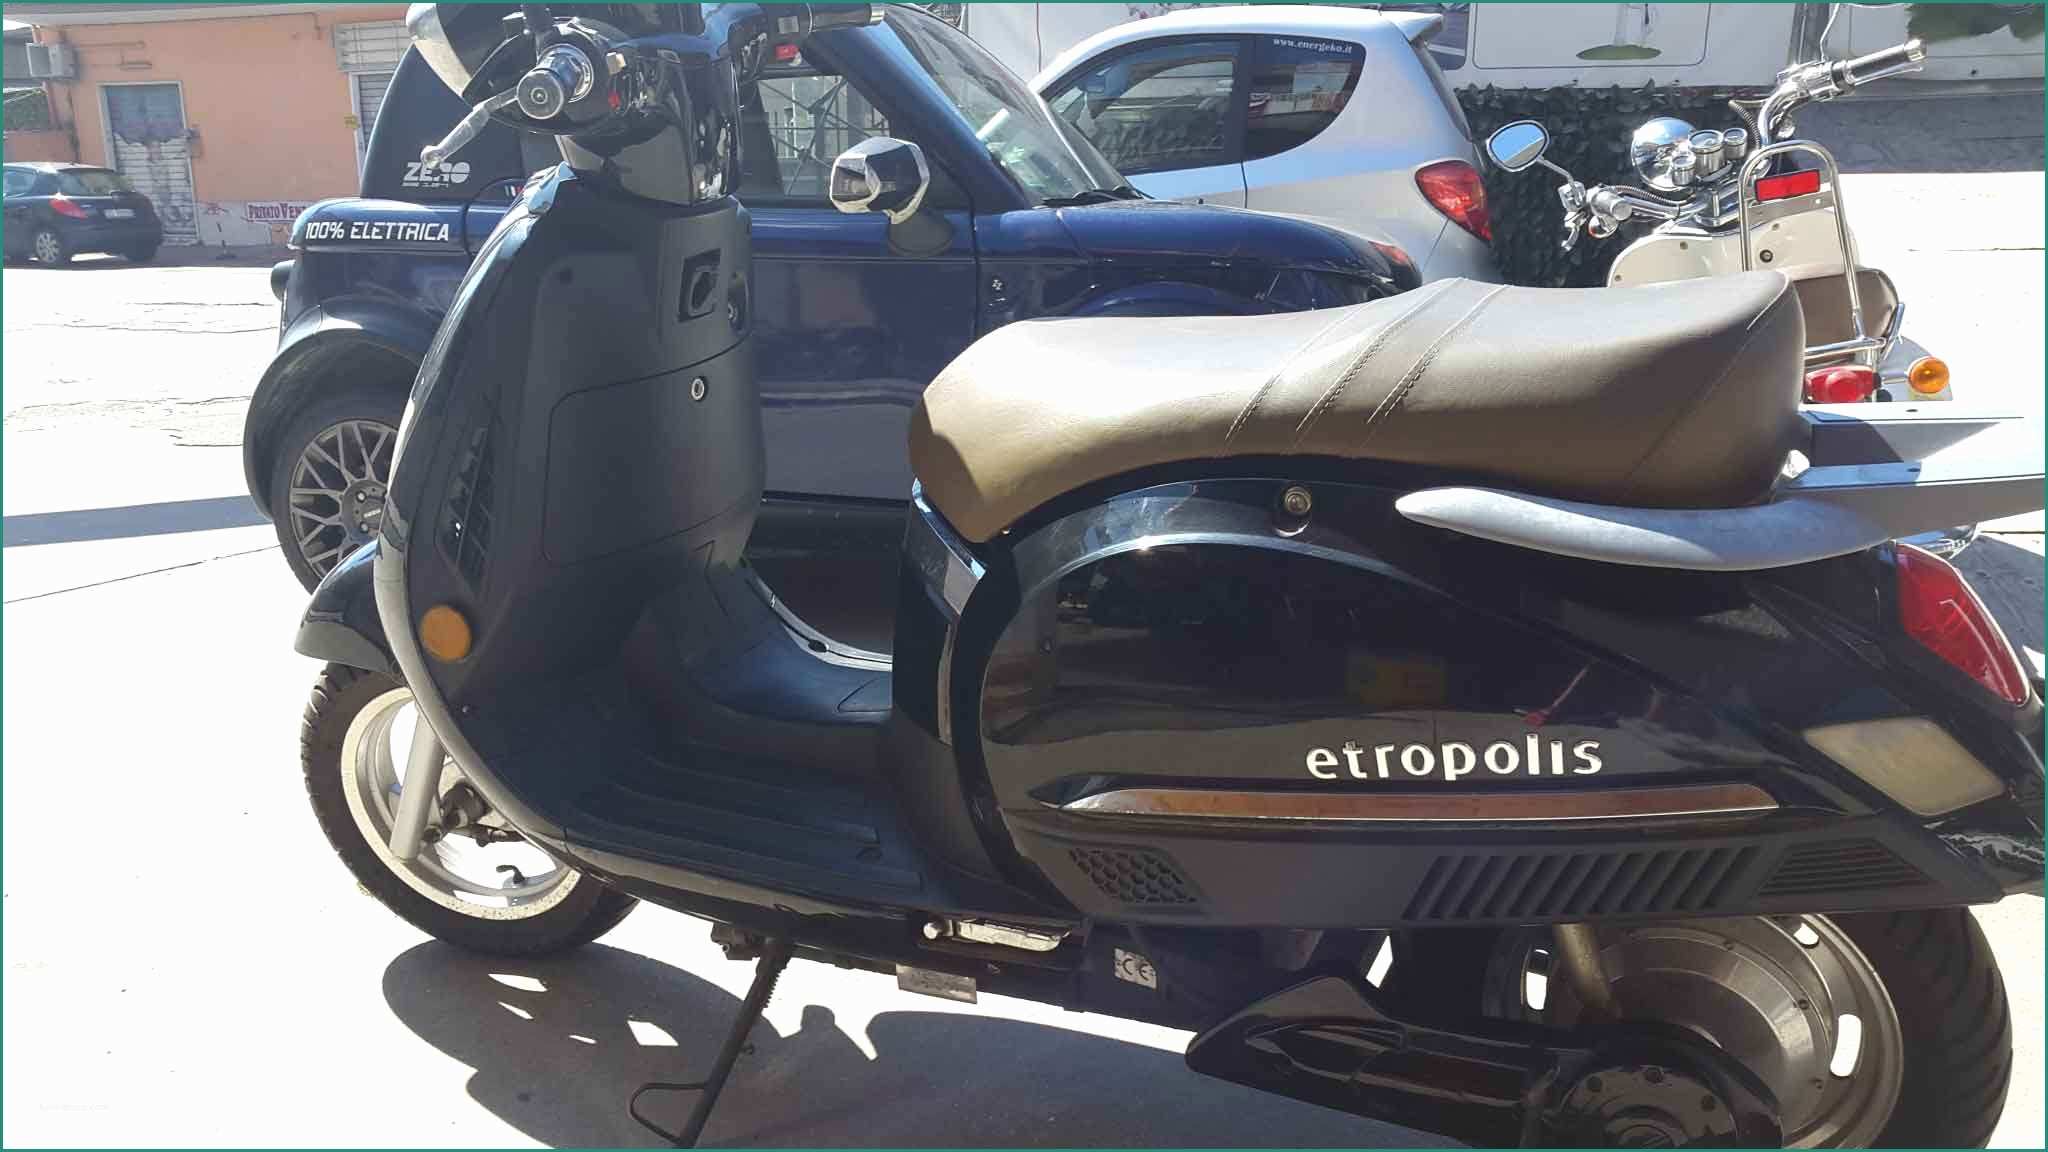 Scooter Per Disabili Usati E Bici Elettrica Piaggio Usata – Idea Di Immagine Del Motociclo